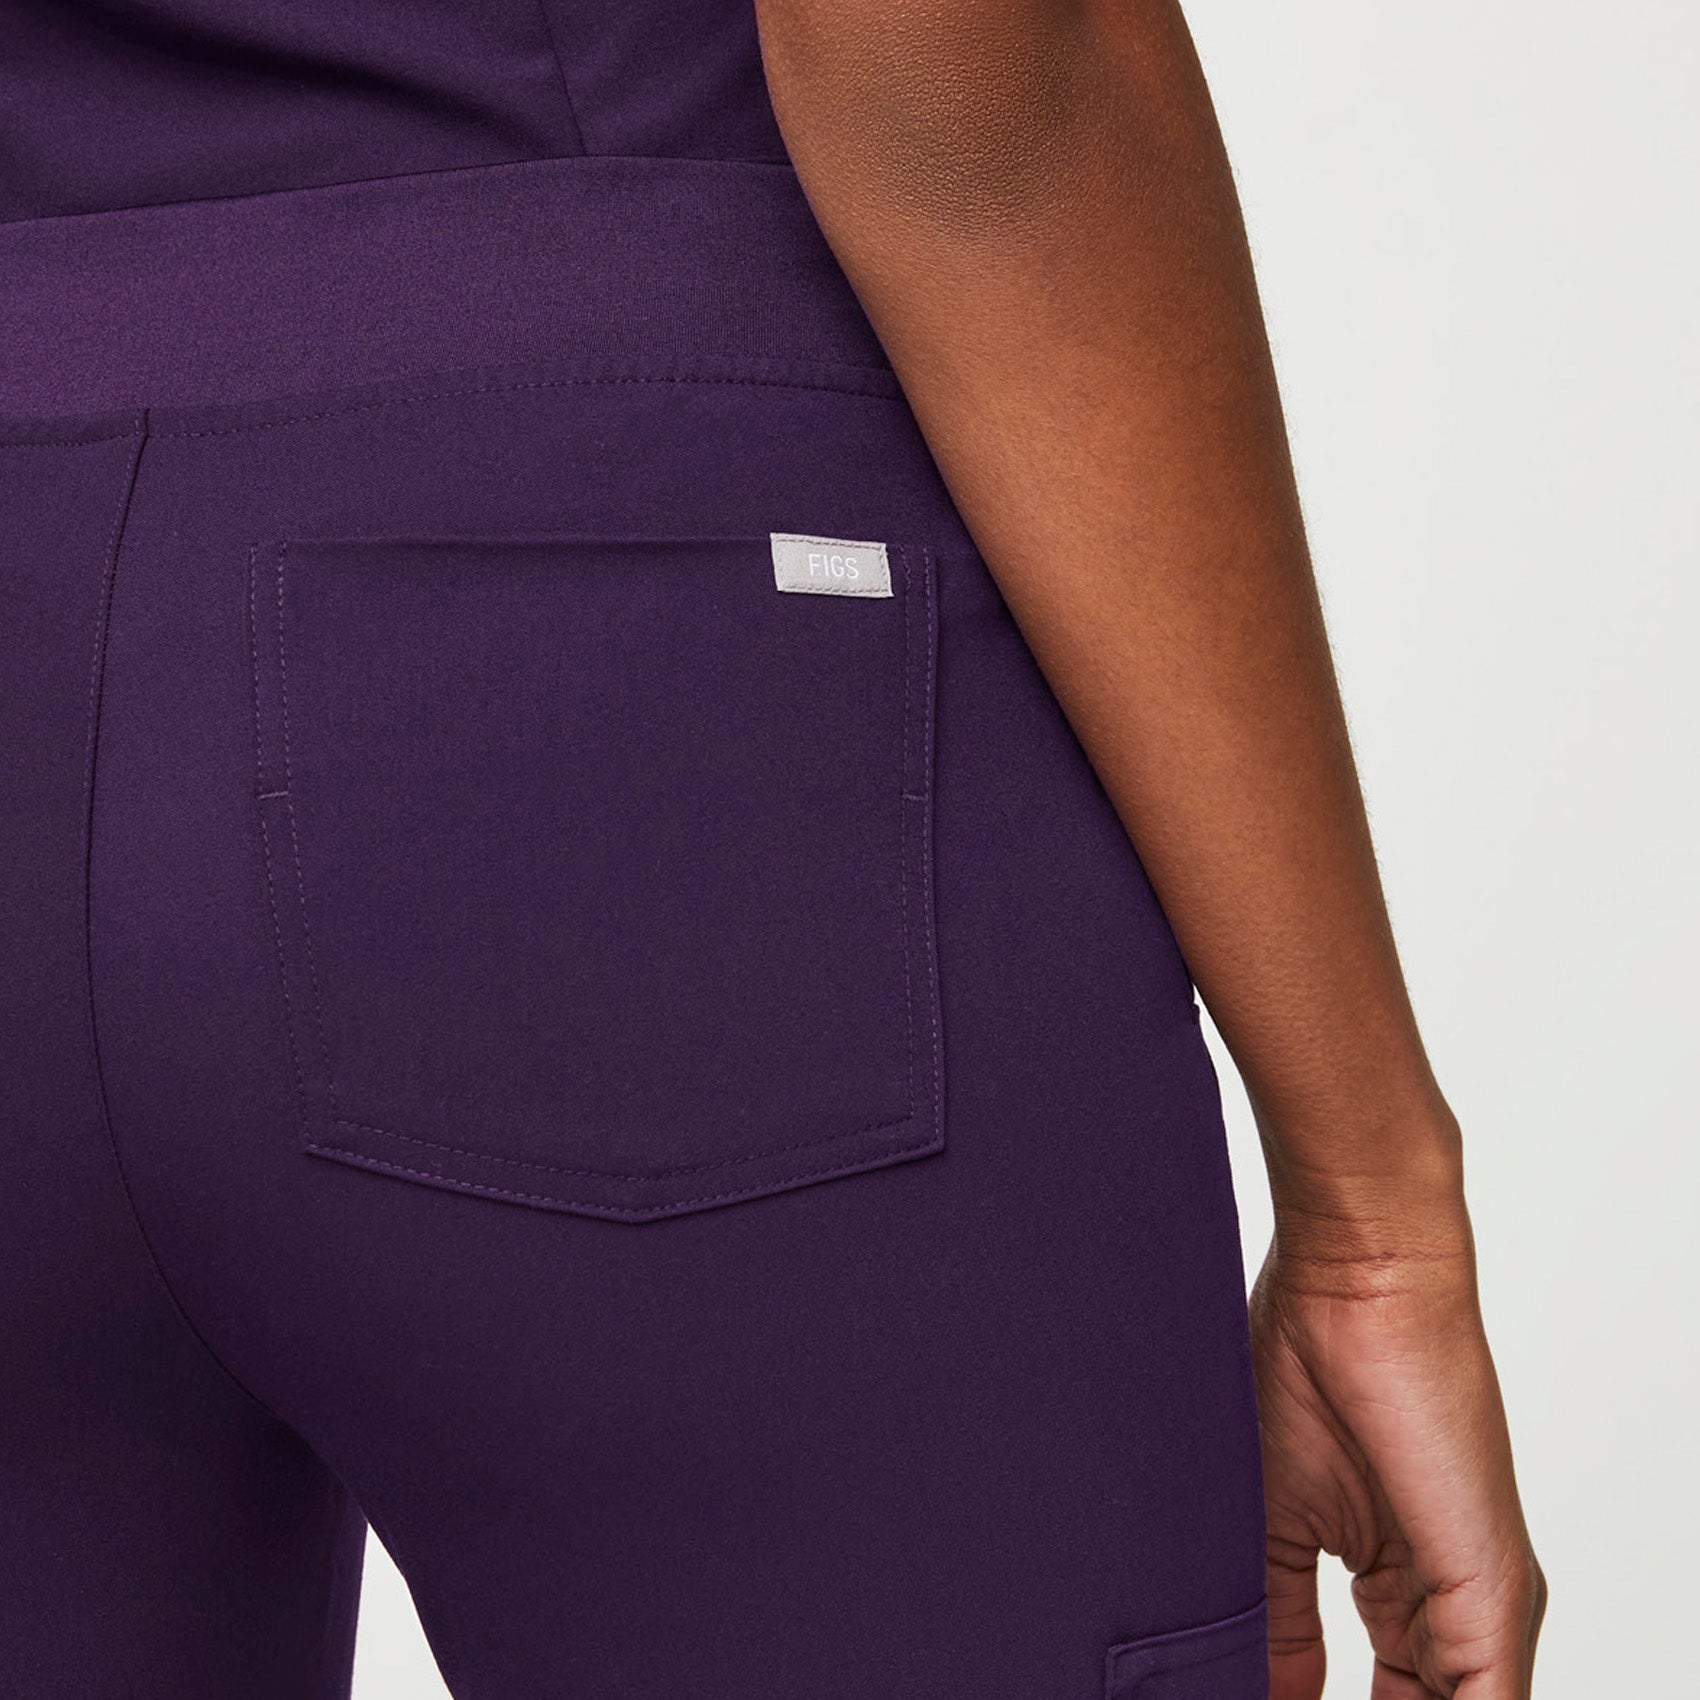 Pantalón deportivo de uniforme médico Zamora™ para mujer - Jam púrpura ·  FIGS